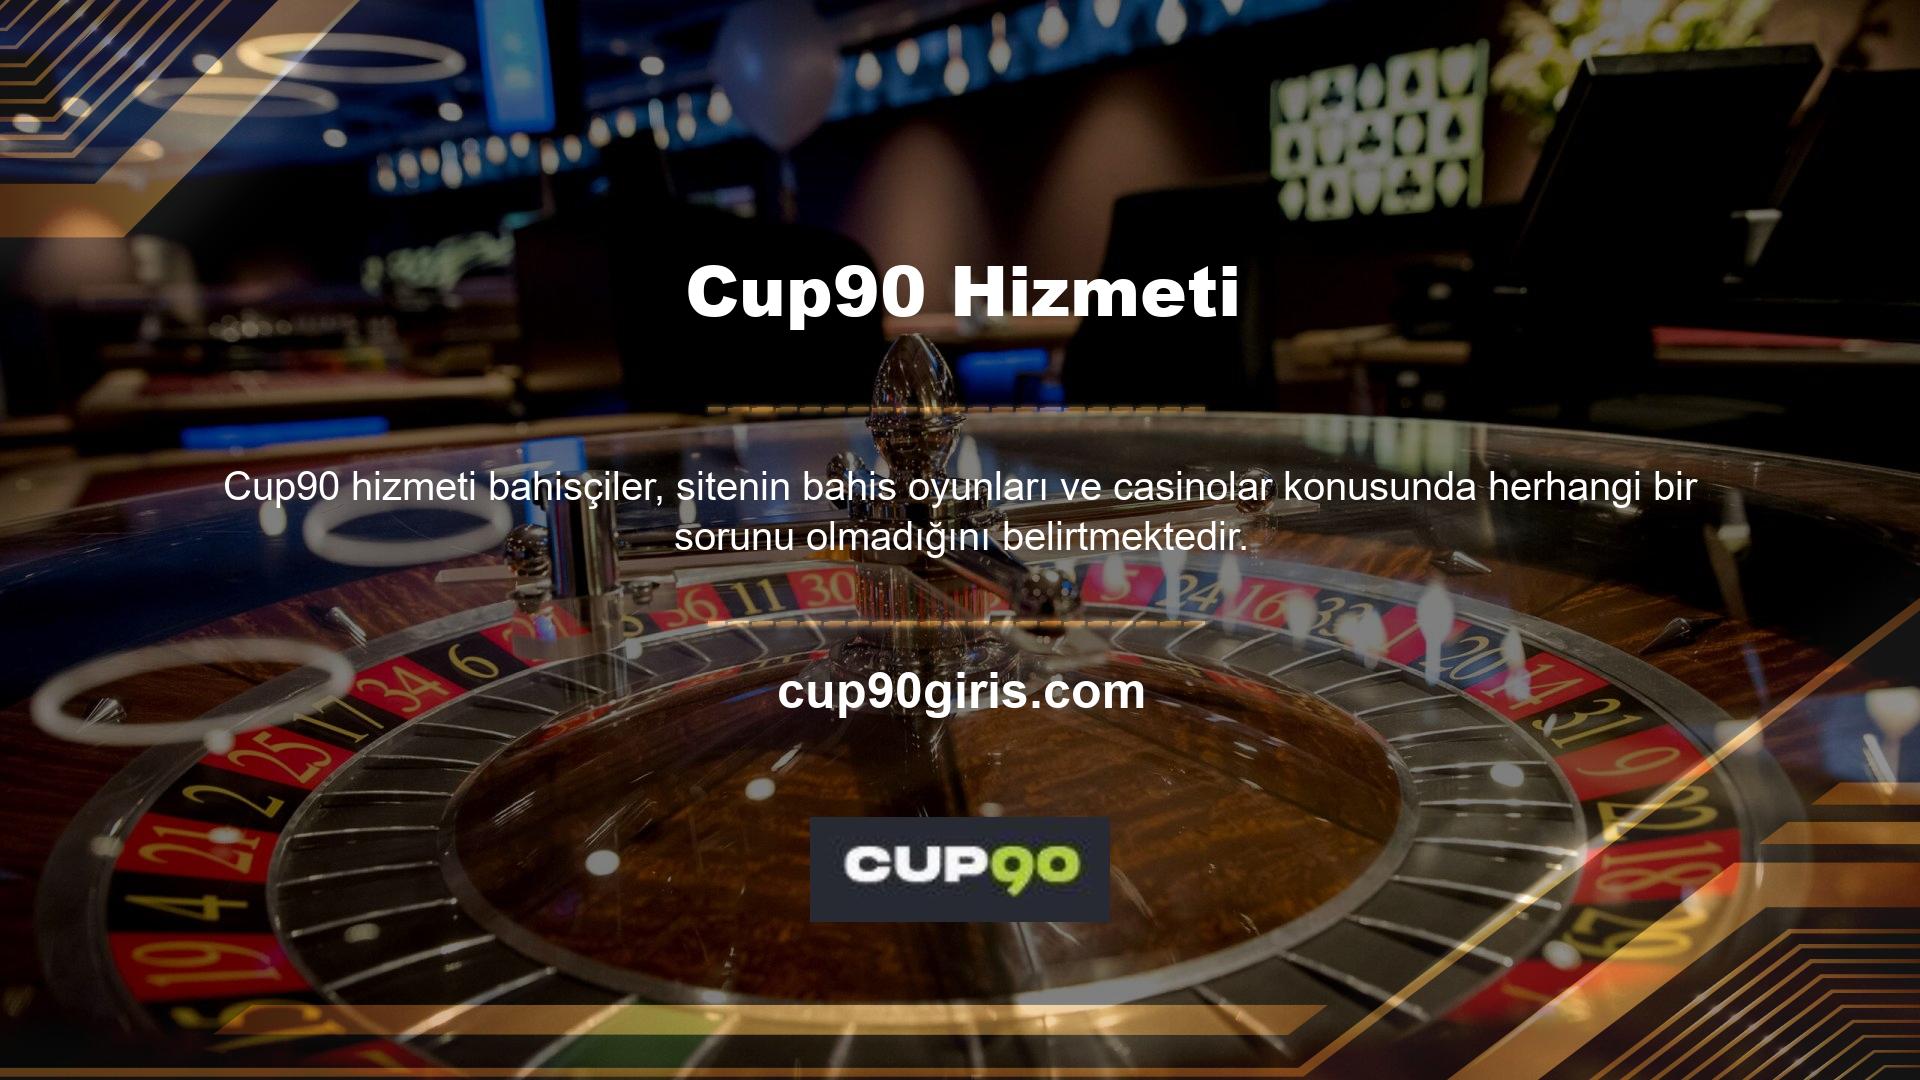 Cup90 bu gösteriyle hem poker hem de casino oyunlarındaki uzmanlığını sergiliyor